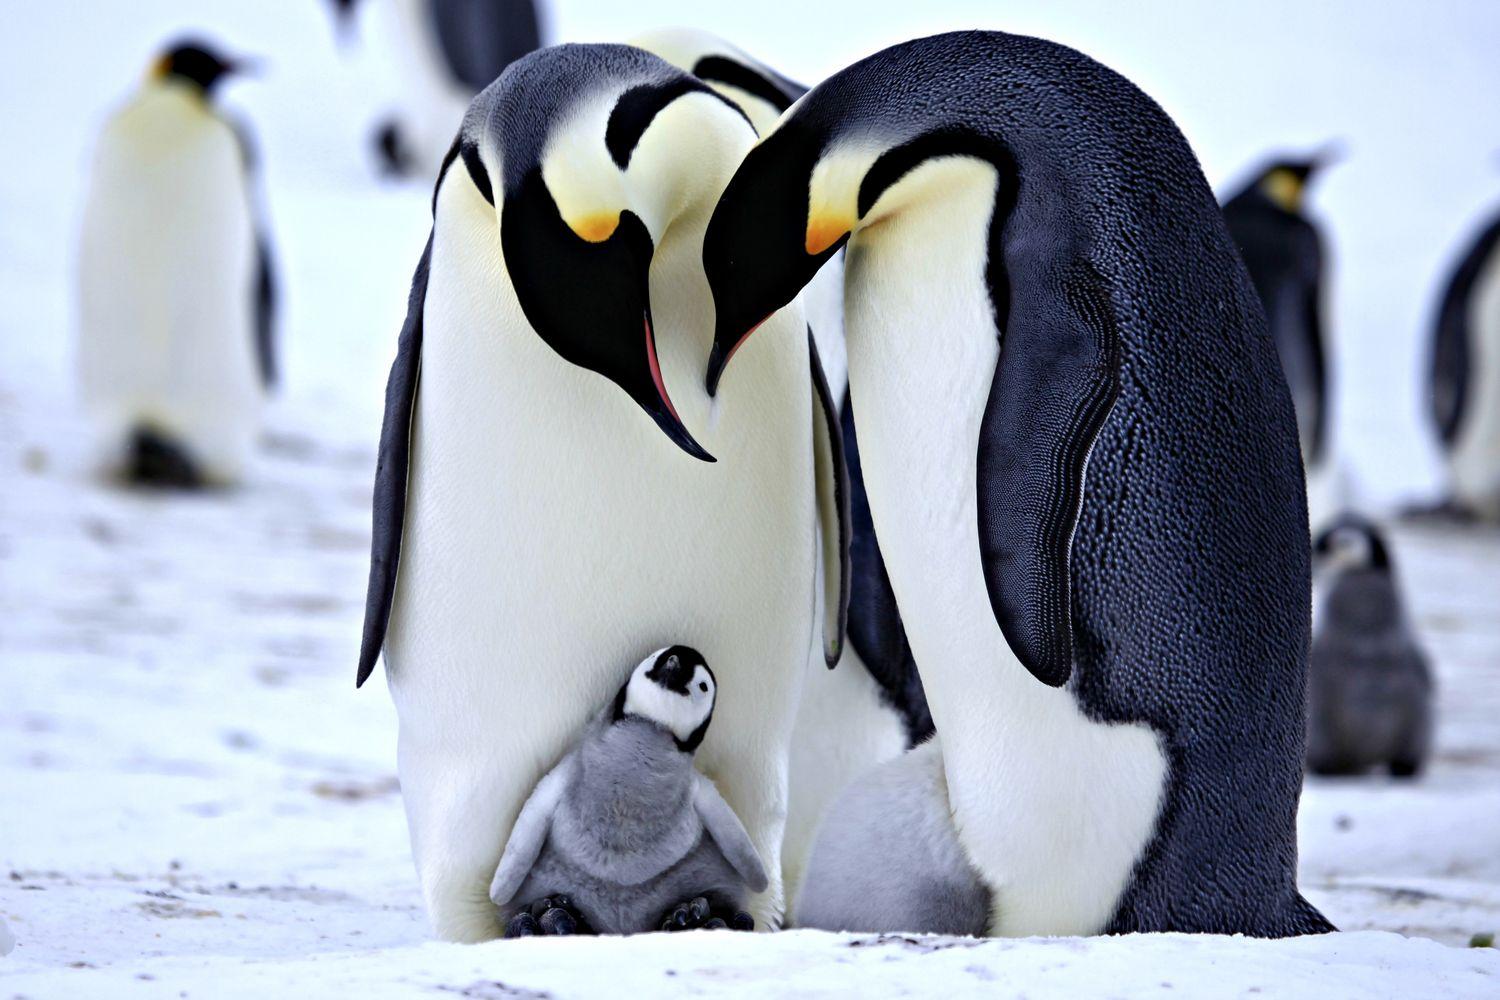 Новость - События - Отметь День осведомленности о пингвинах вместе с Афанасием: какой сегодня праздник, курс валют и биткоина, погода, цены на бензин